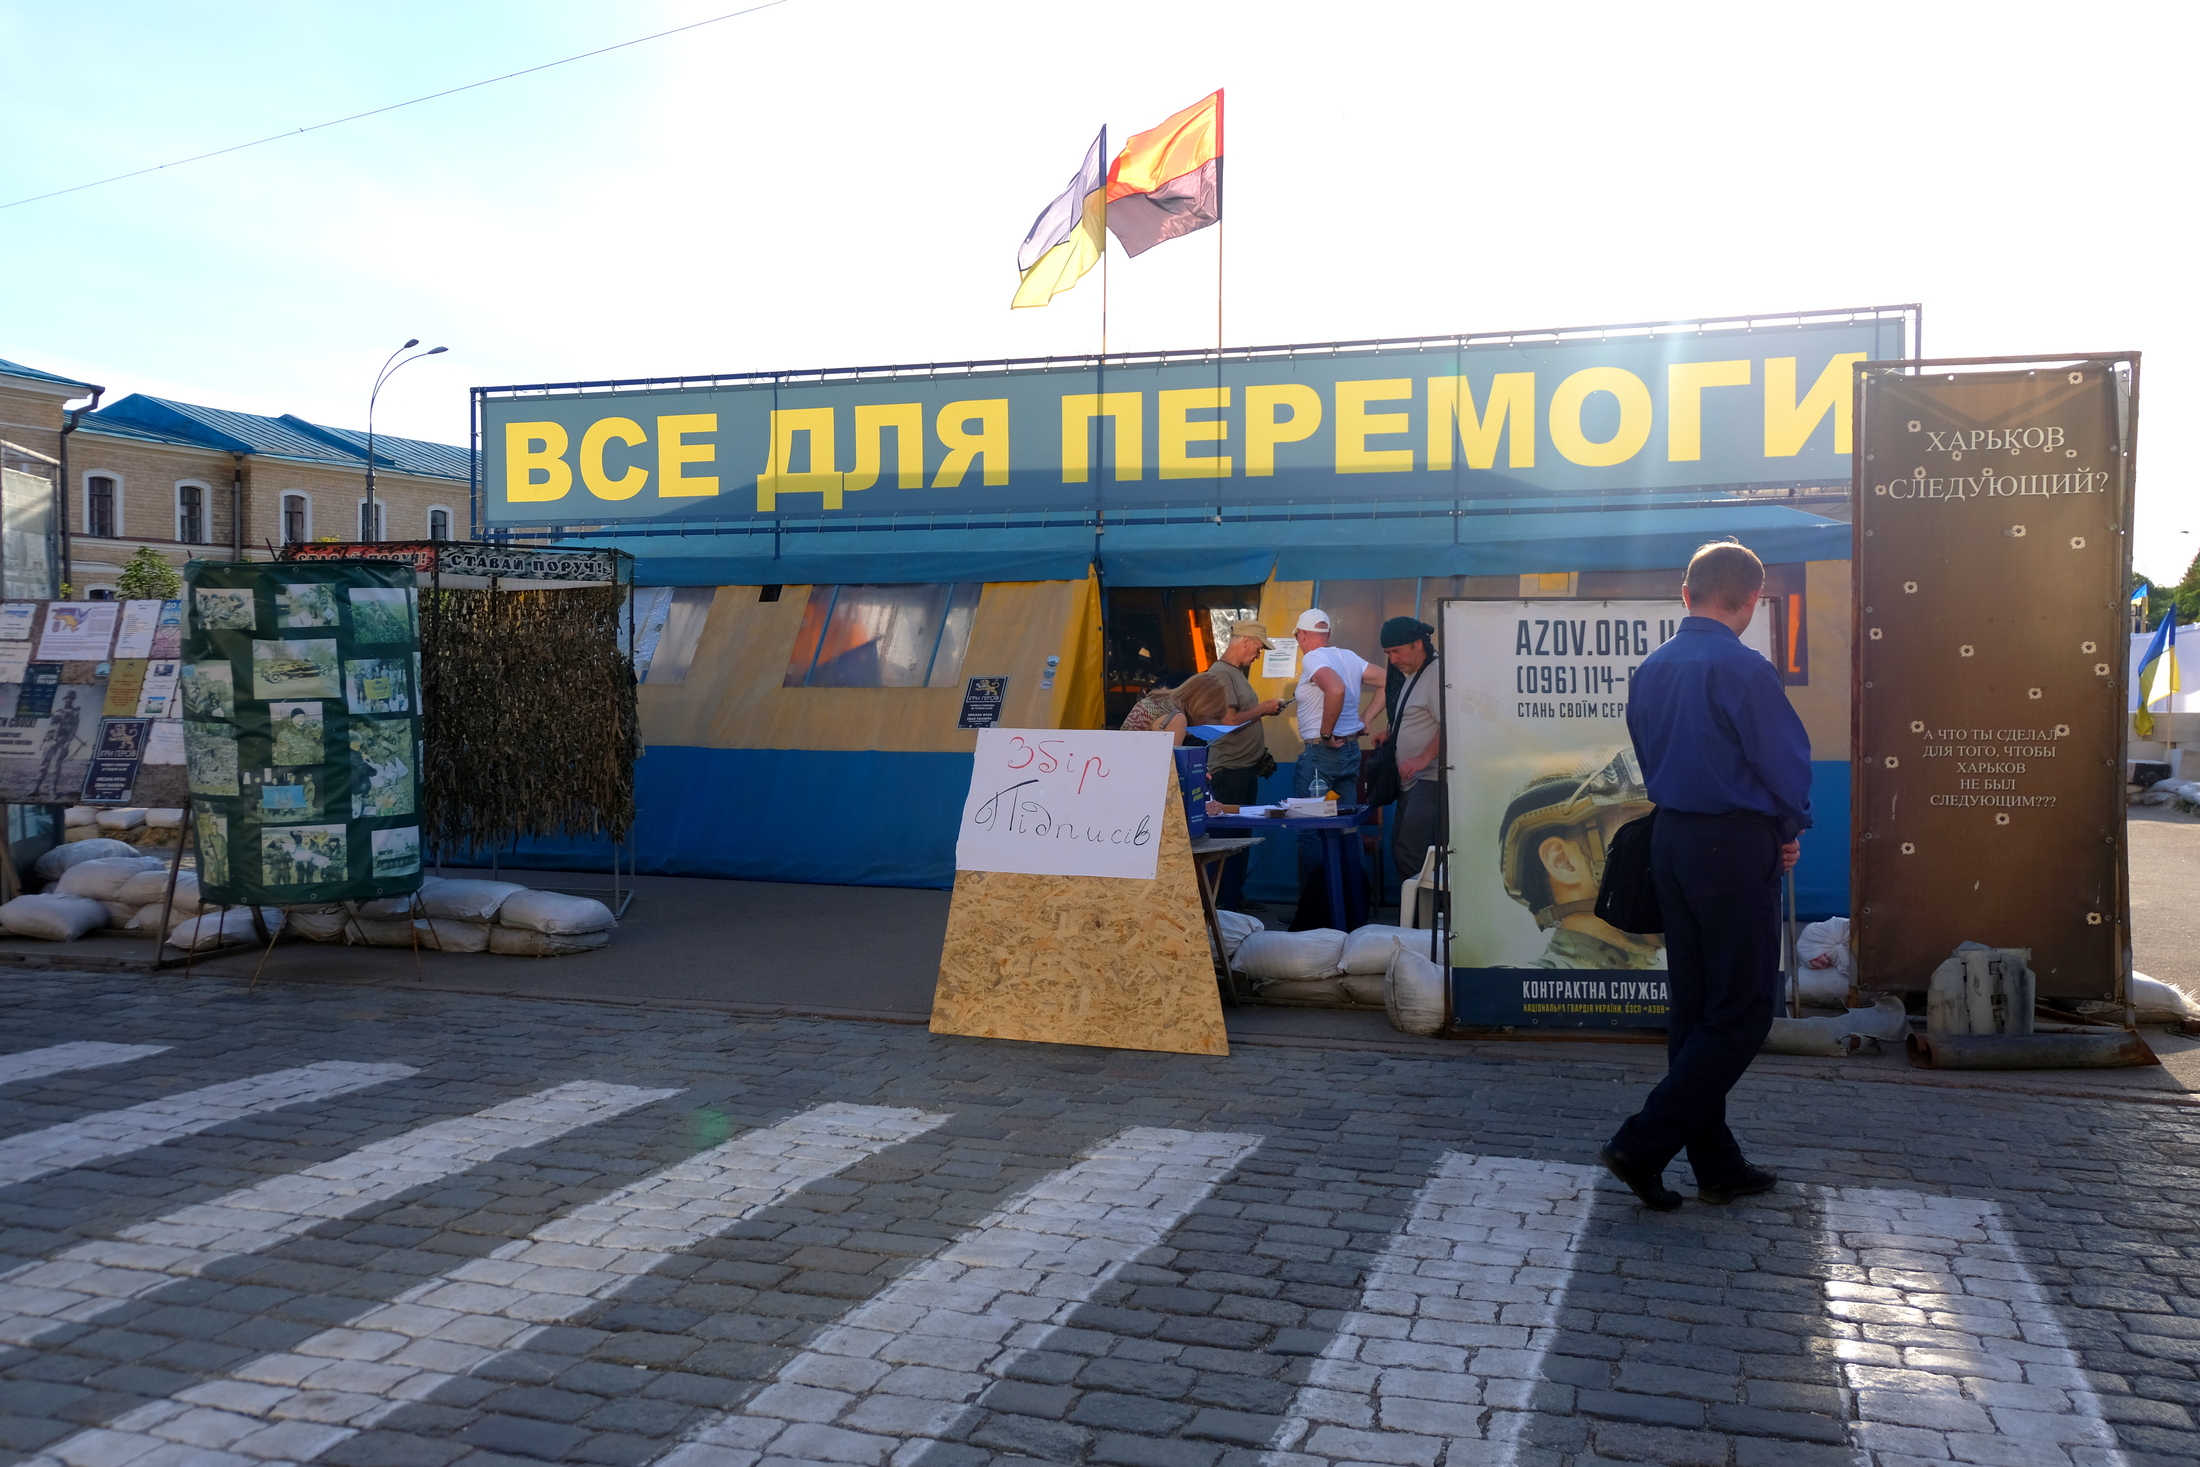 Палатка "Все для перемоги" на площади Свободы в Харькове. Фото: Алина Бычек/Vgorode